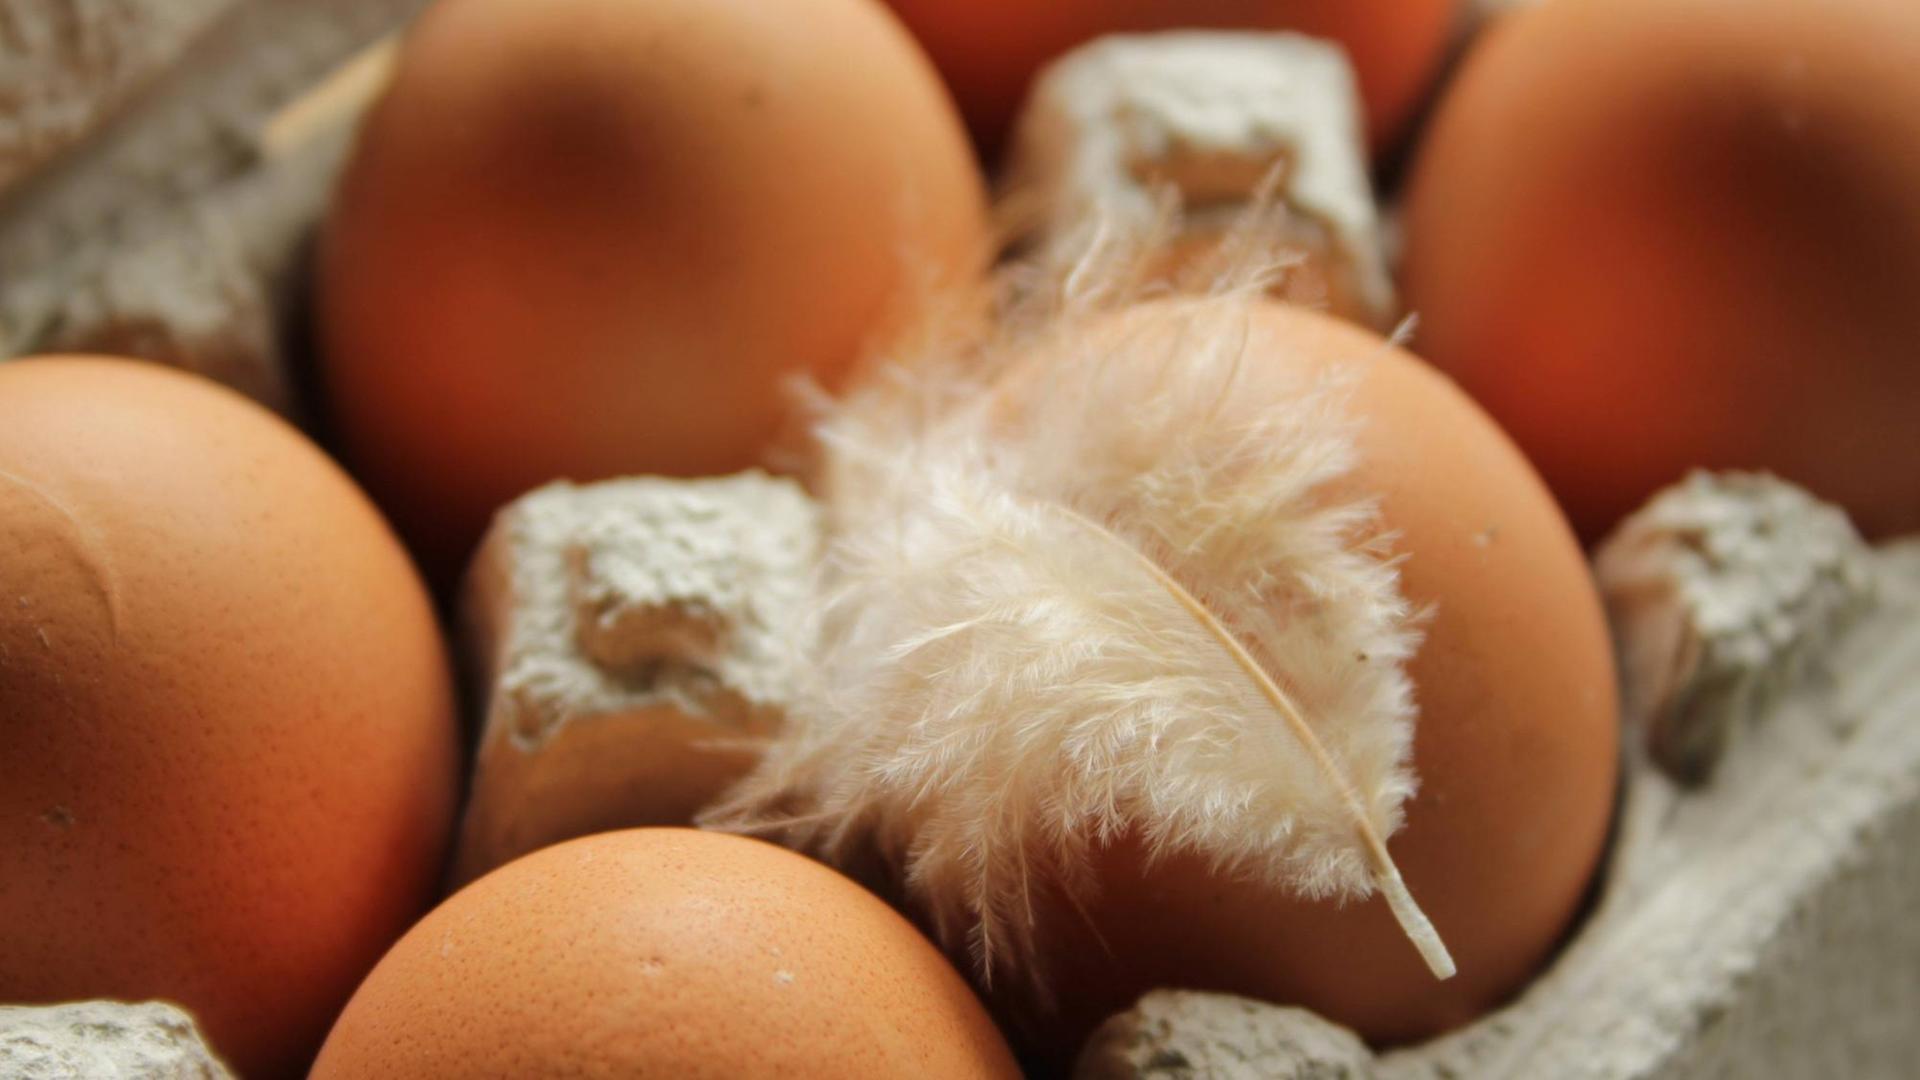 Mit UV-Licht lässt sich der Vitamin-D-Gehalt von Eiern erhöhen